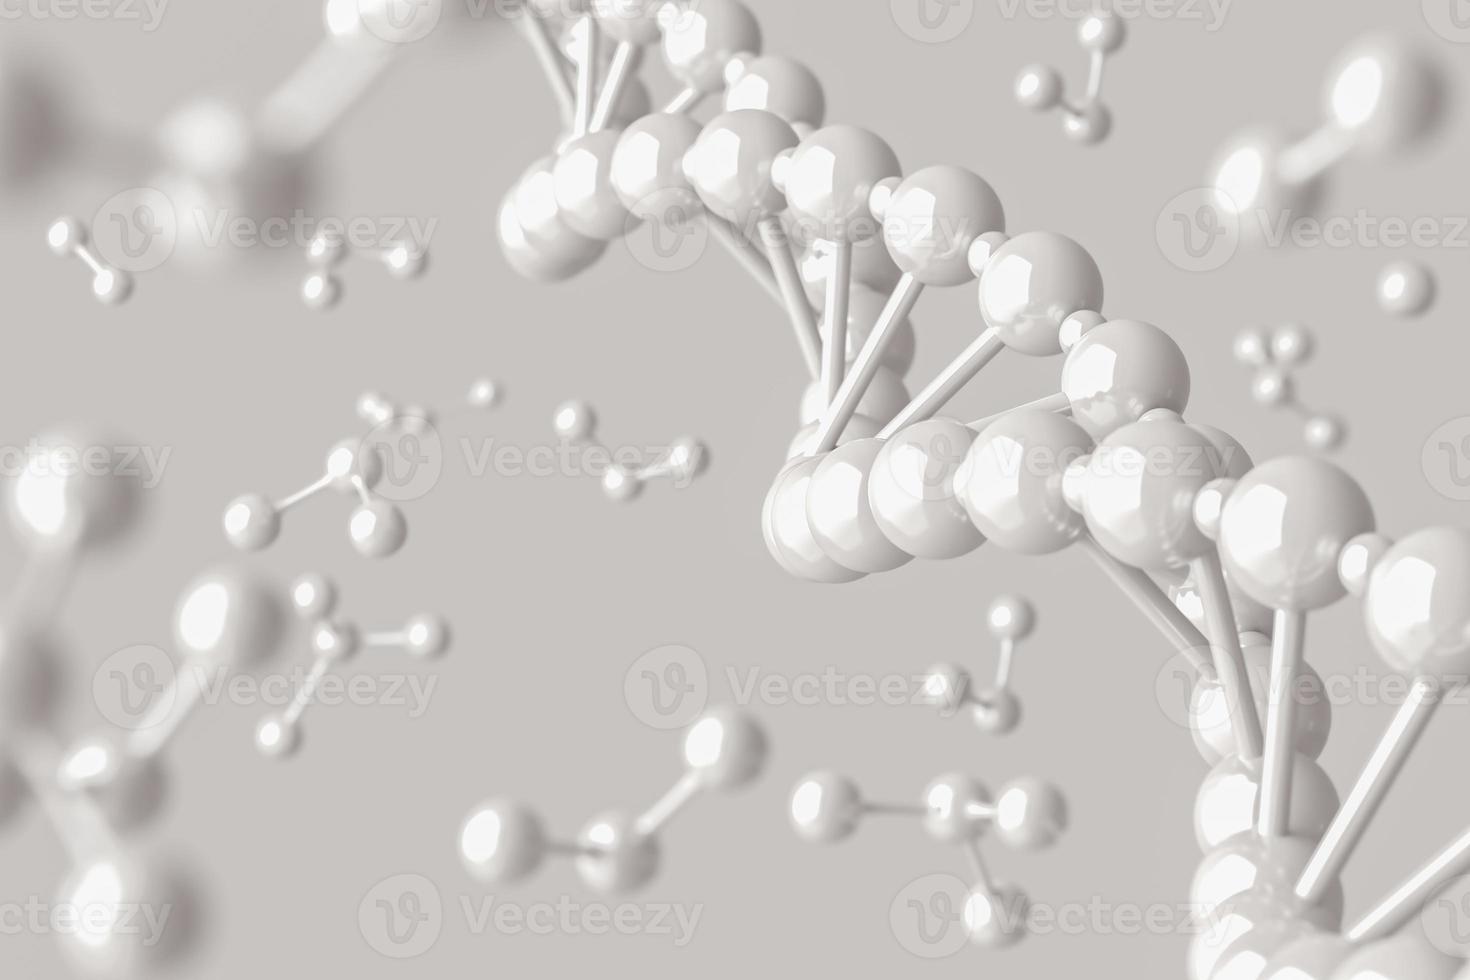 molecuul mockup, abstracte achtergrond voor wetenschap of medisch. 3D-rendering foto